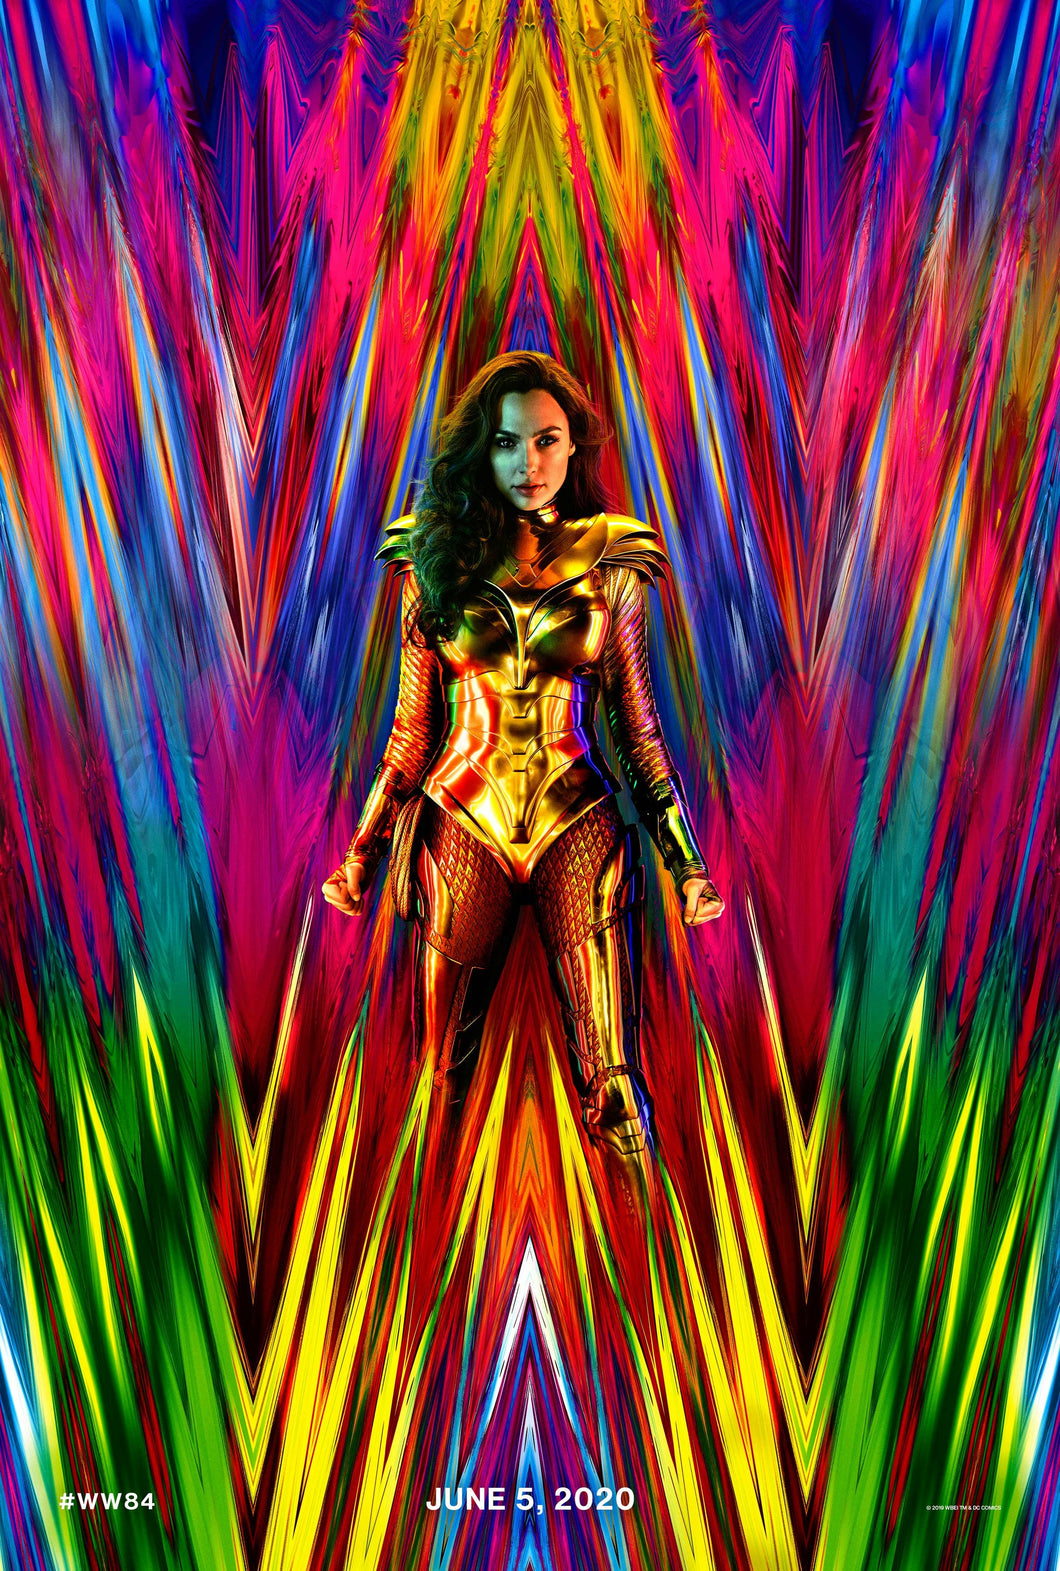 Poster Pelicula Wonder Woman 1984